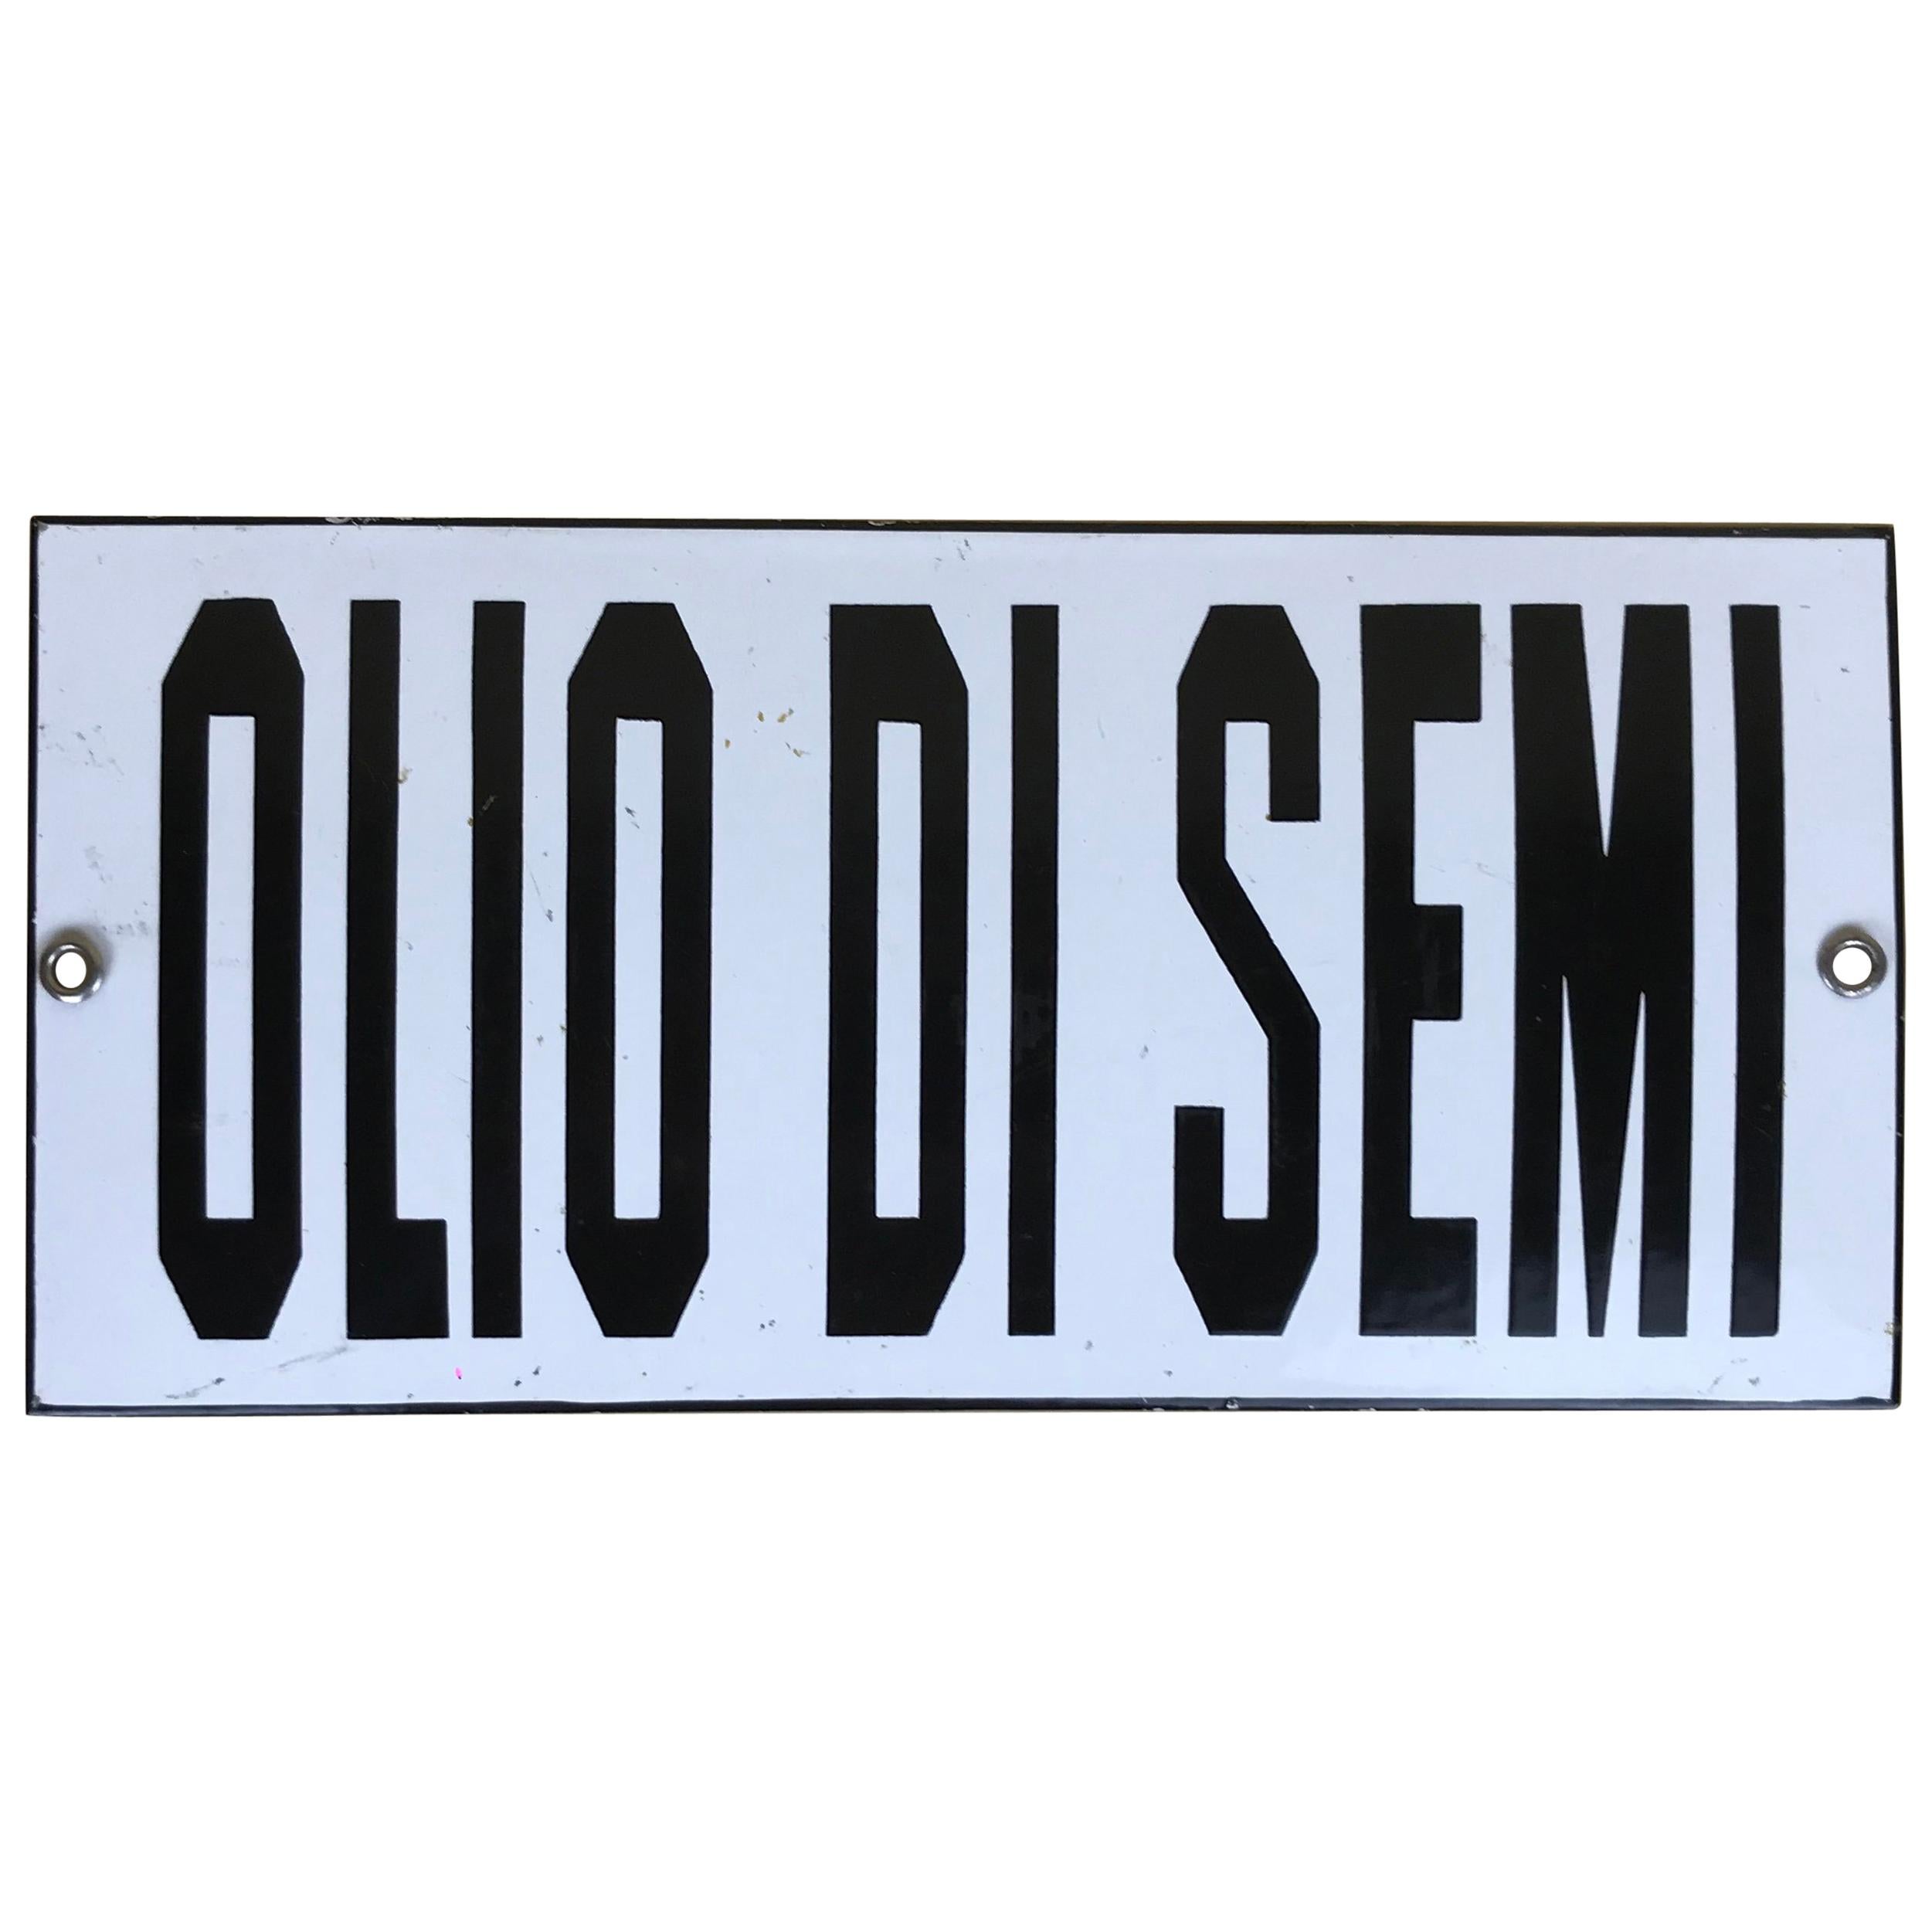 1950s Vintage Italian Enamel Metal Sign "Olio Semi", 'Seed Oil' For Sale